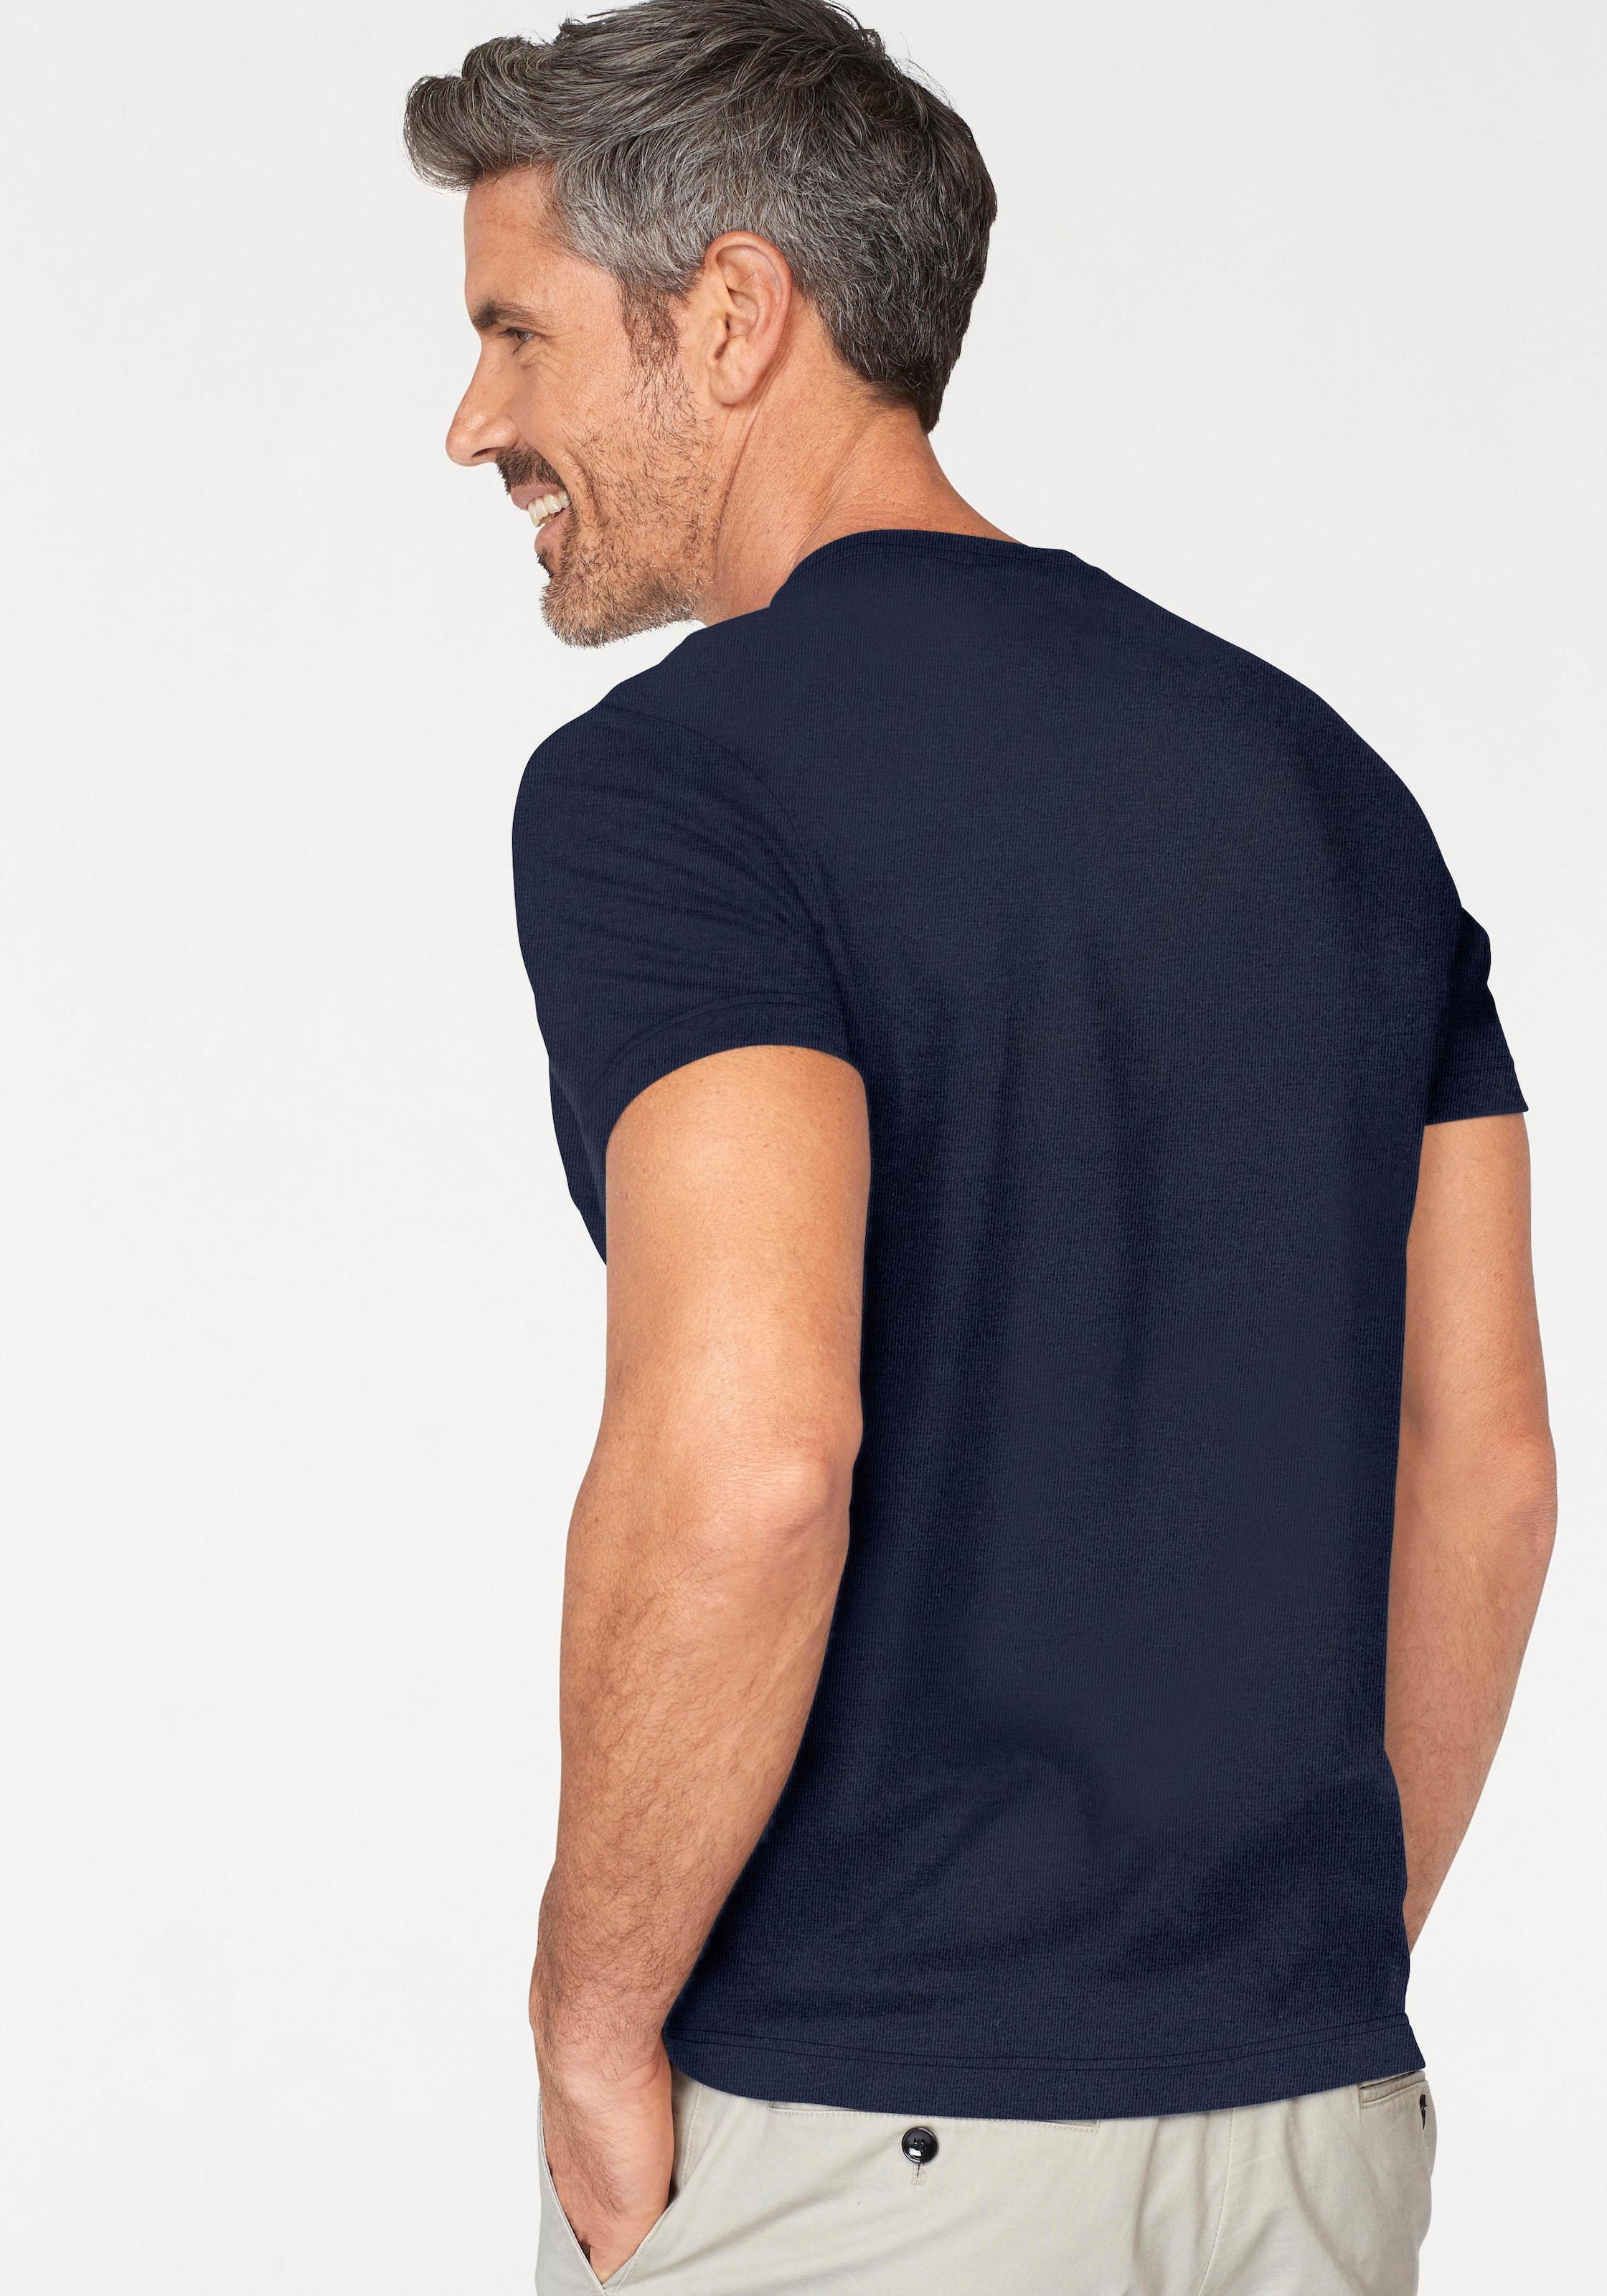 Lacoste V-Shirt, (1 tlg.), für Iconisches ein Brust Lacoste-Krokodil bei stilvolles auf OTTO shoppen Statemen online der